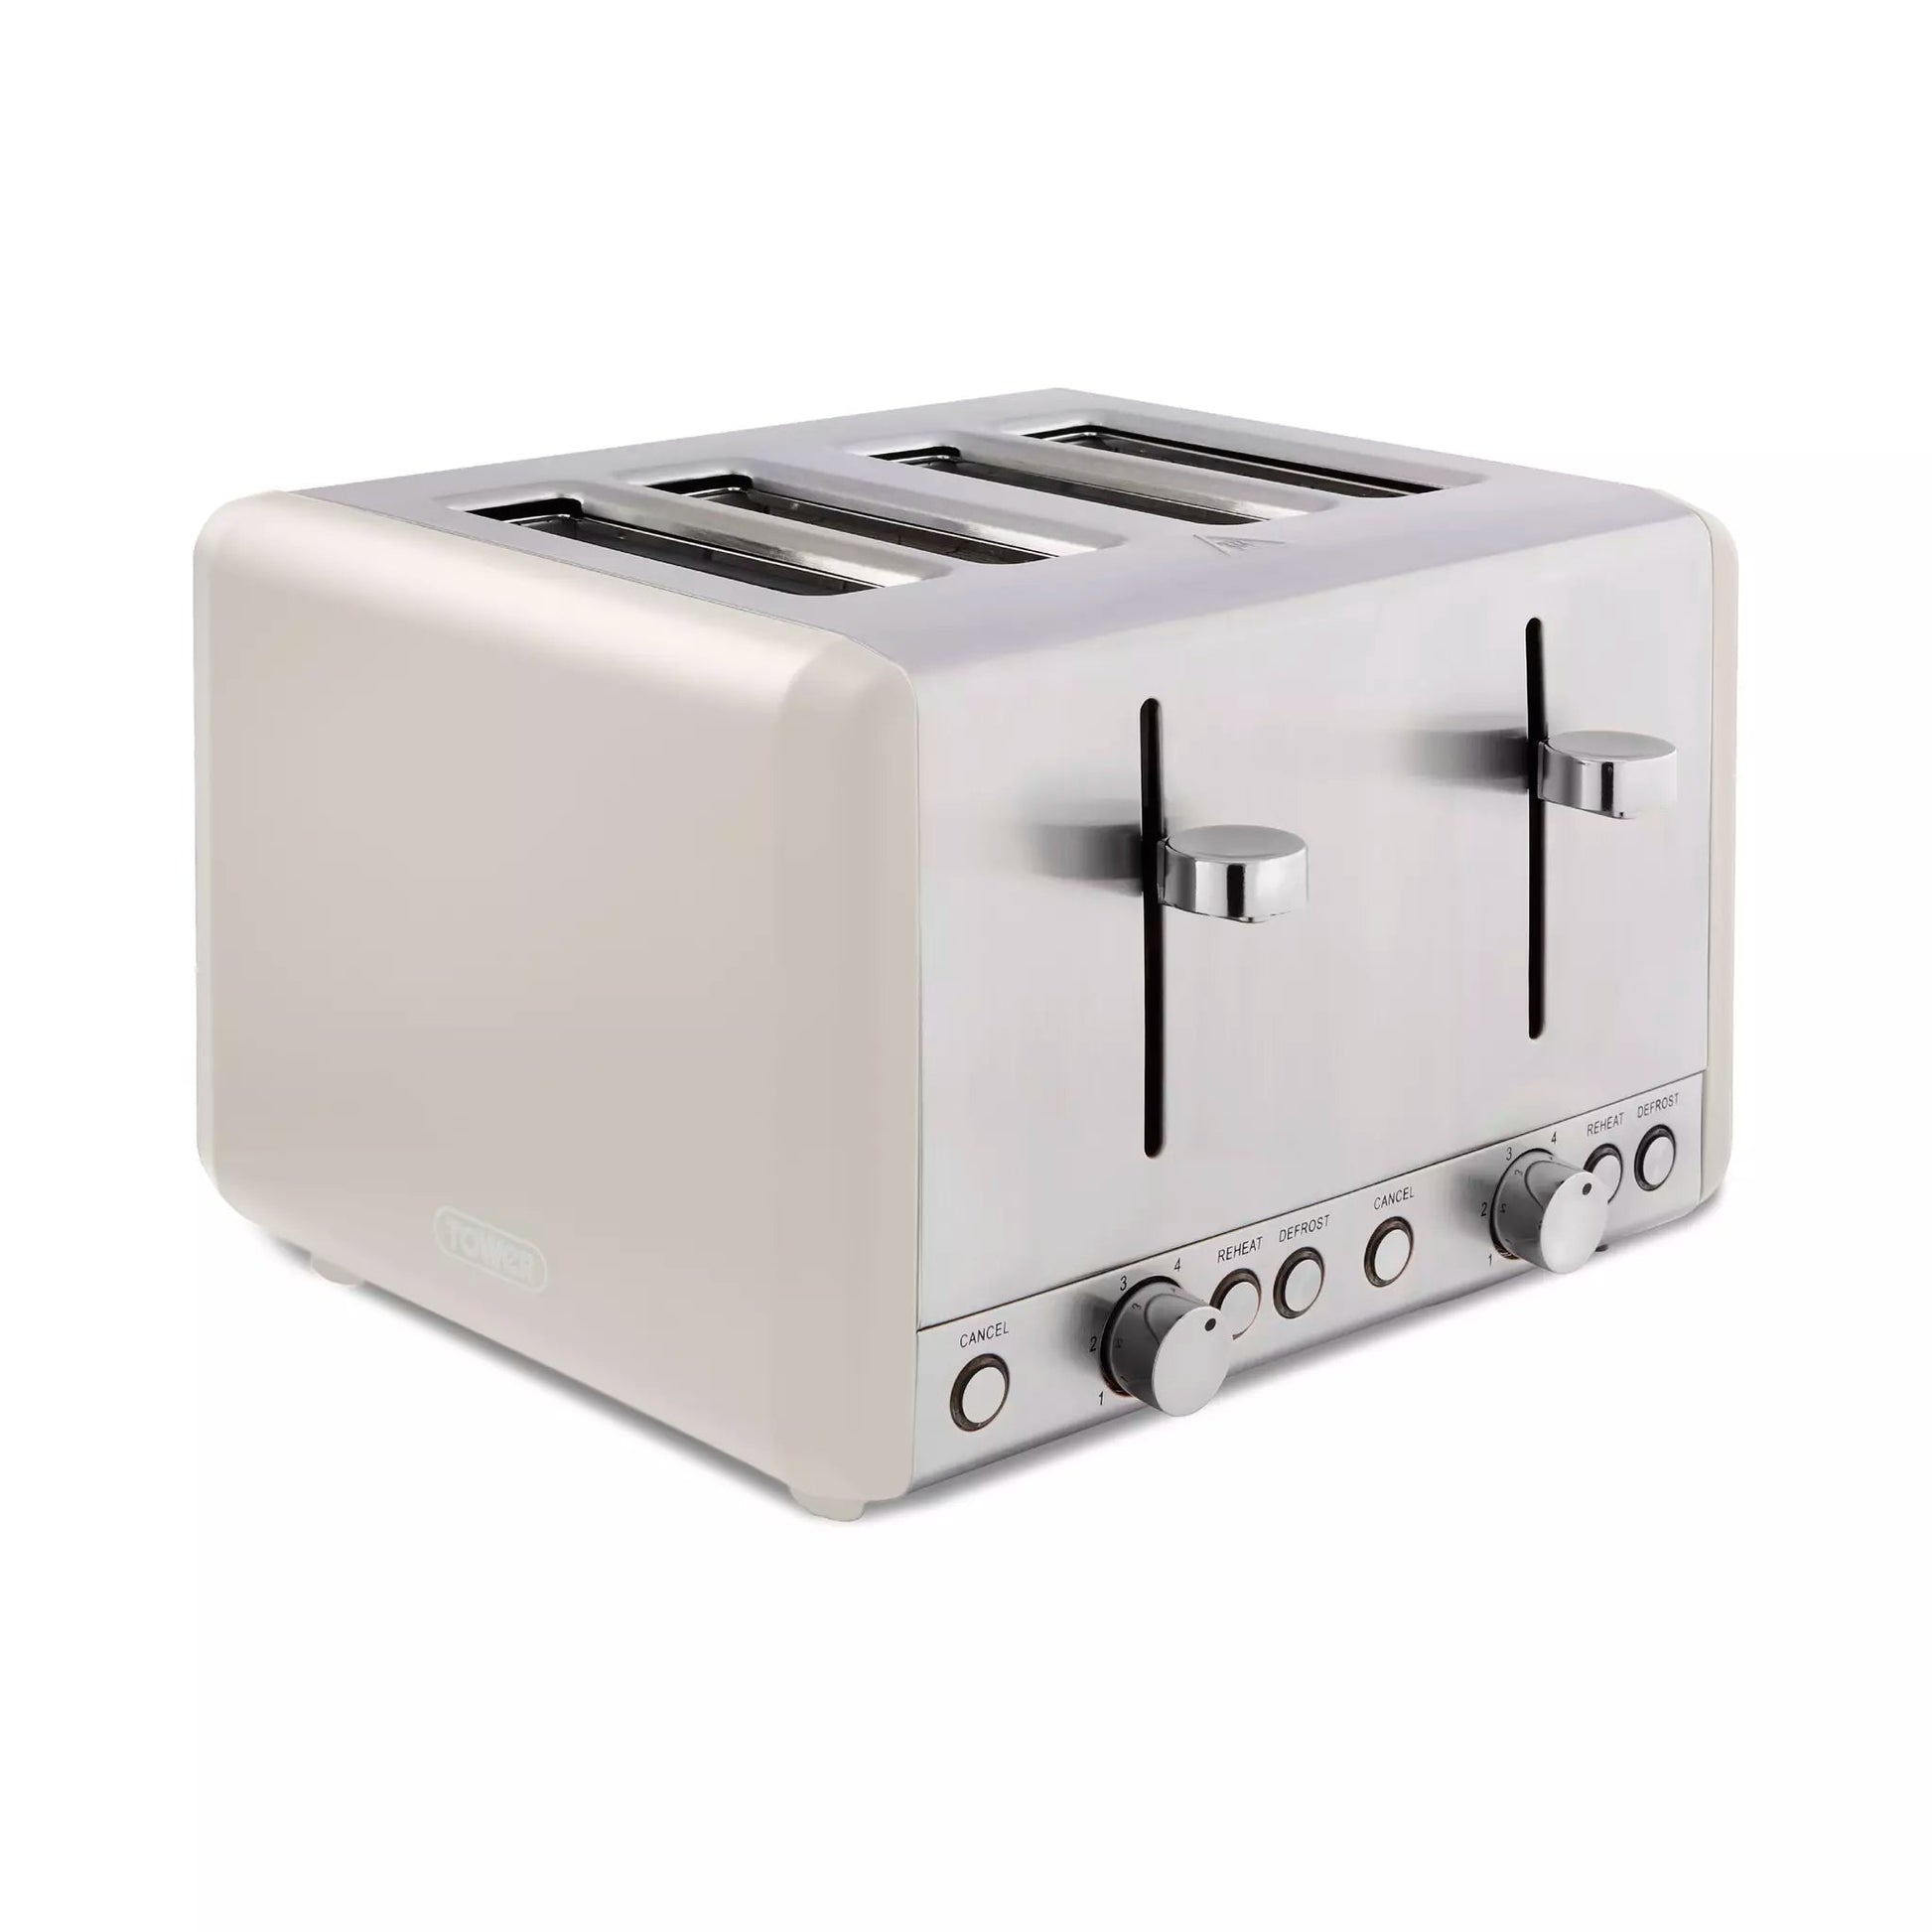 Kitchenware  -  Cavaletto 4 Slice Toaster - Mushroom  -  60008032